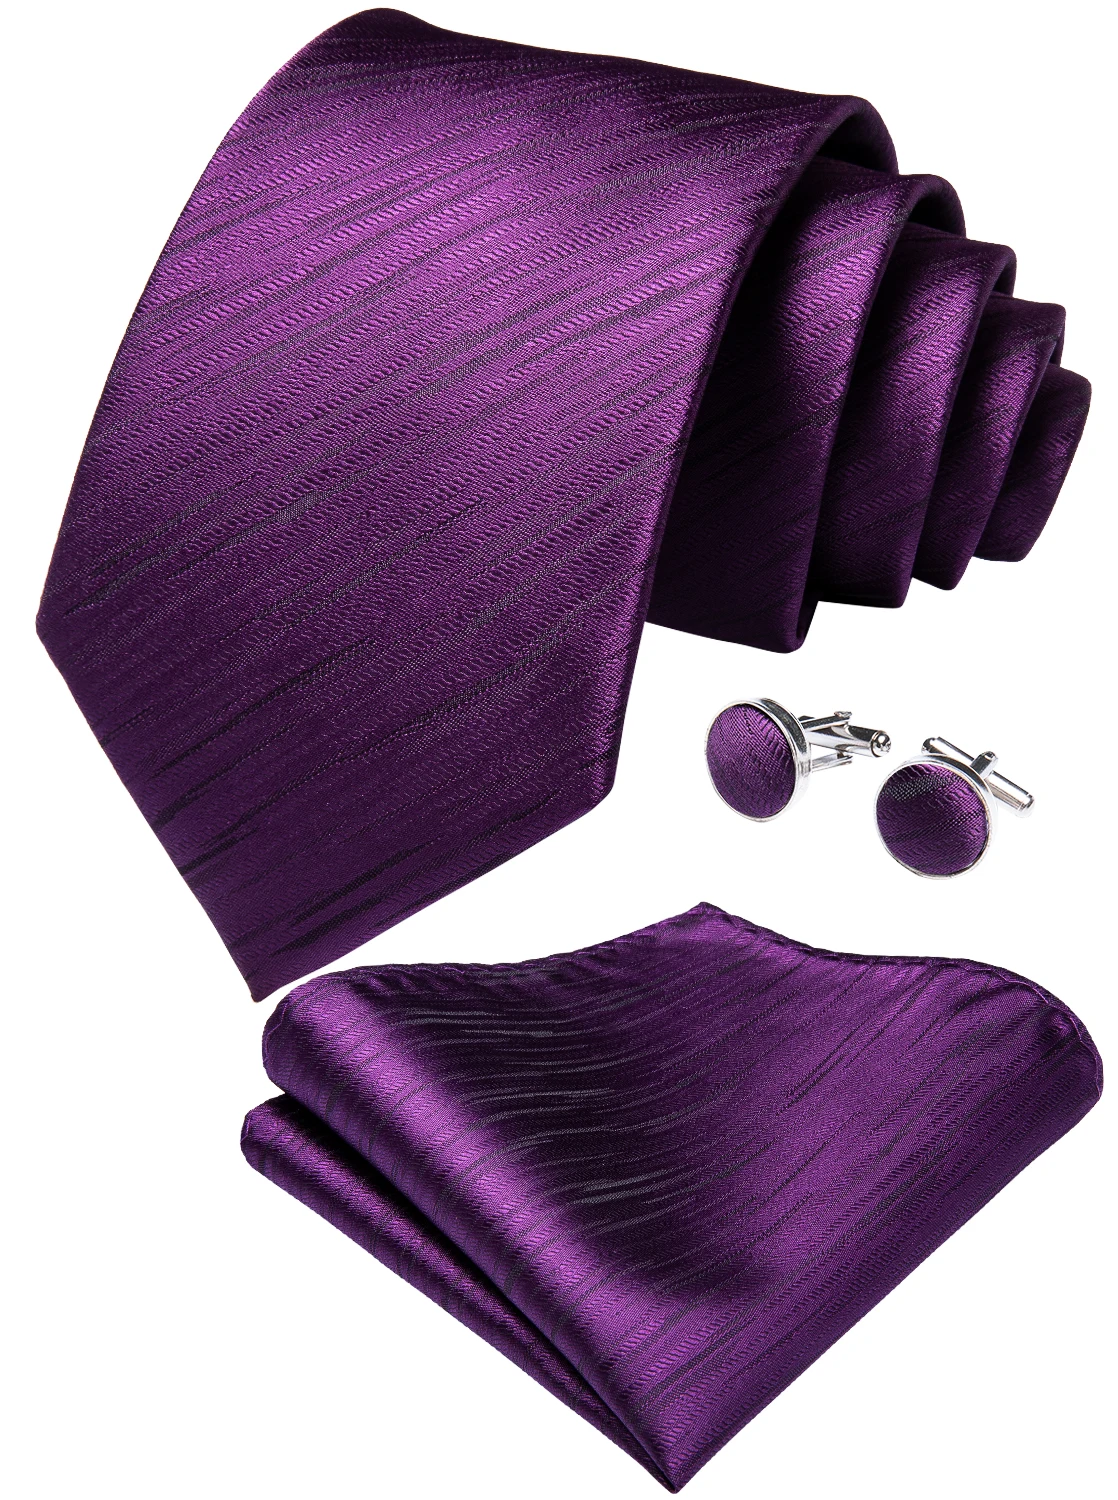 SJT-7225 DiBanGu роскошный фиолетовый однотонный мужской галстук шелковый галстук для мужчин Hanky запонки подарочный галстук деловой Свадебный галстук набор